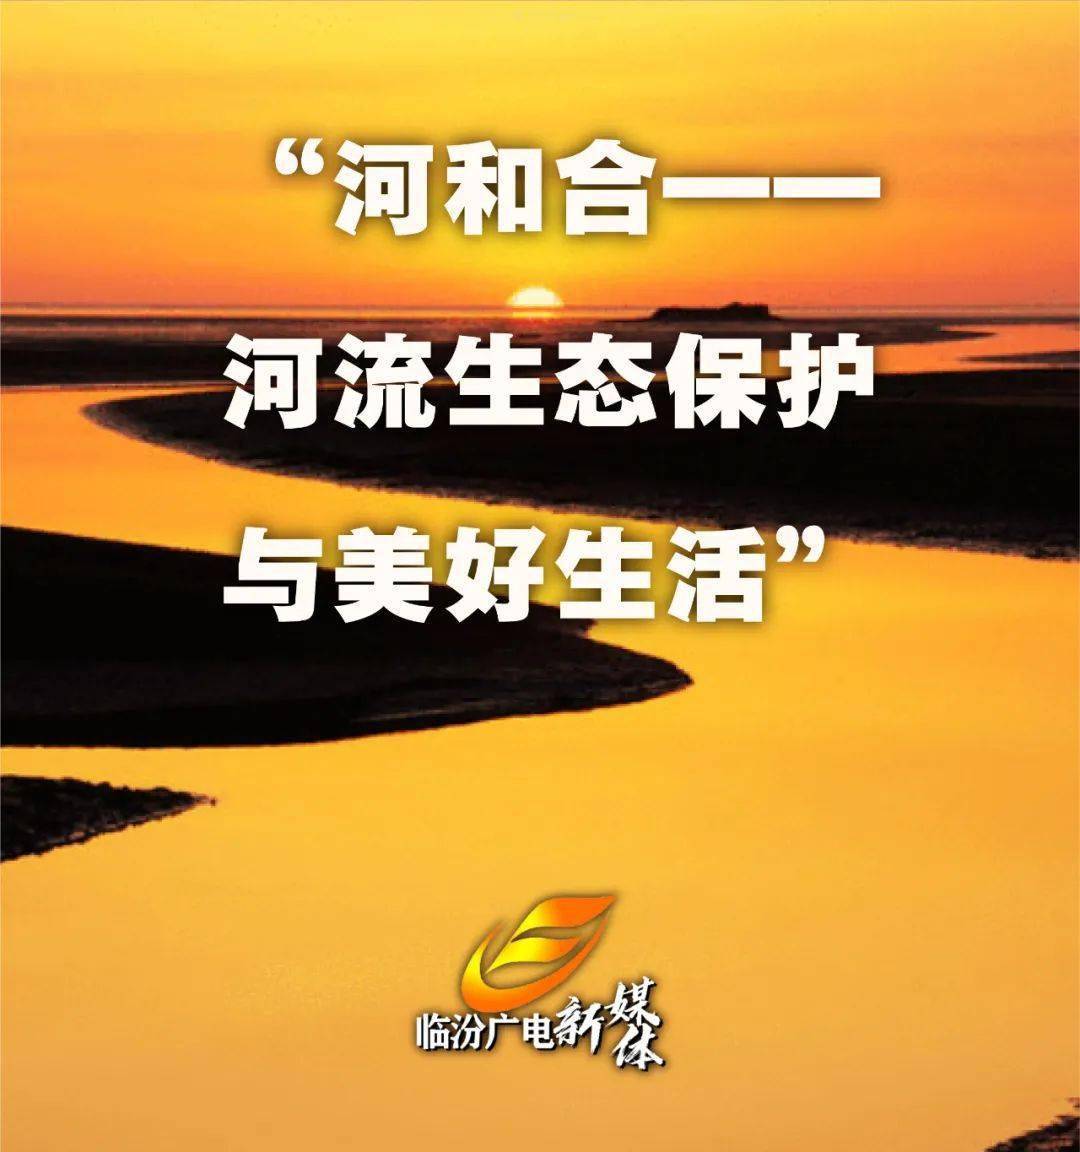 【大河论坛·黄河峰会】 | 寄语大河论坛 著名诗人有话说